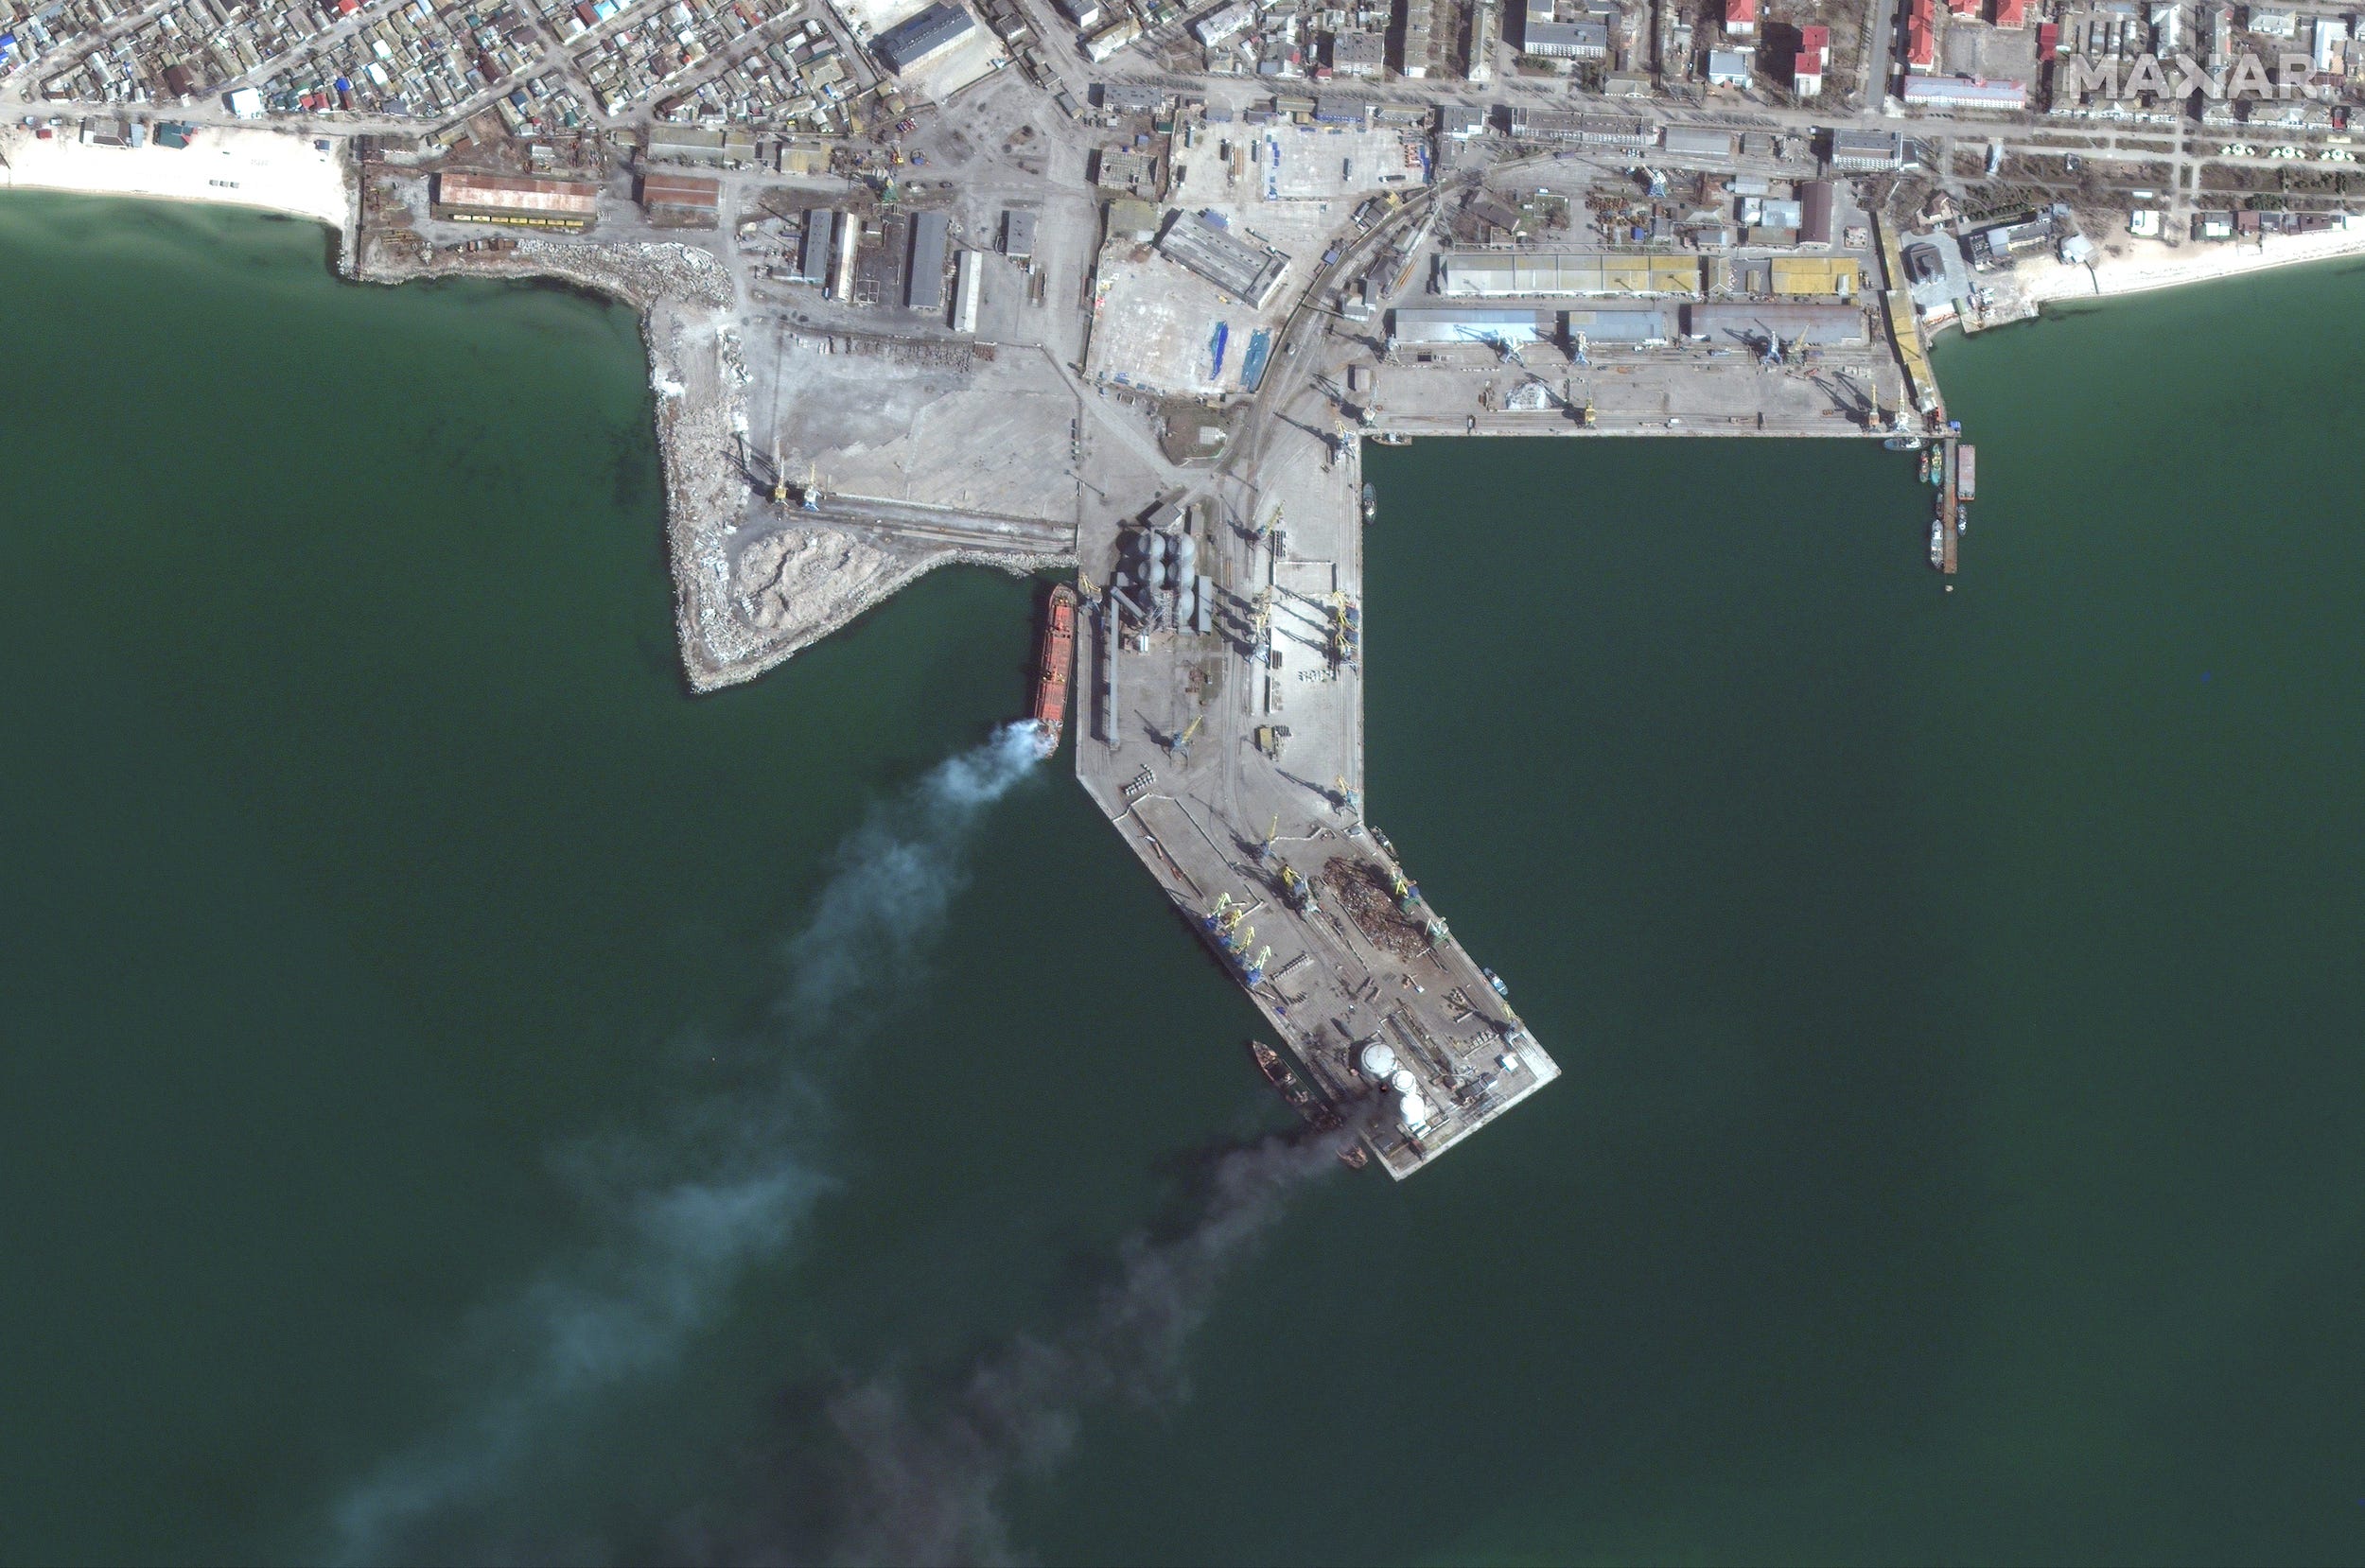 Satellitenbilder zeigen ein brennendes russisches Amphibienkriegsschiff im Hafen von Berdjansk (unten), nachdem es in Match 24 von ukrainischen Streitkräften angegriffen wurde.